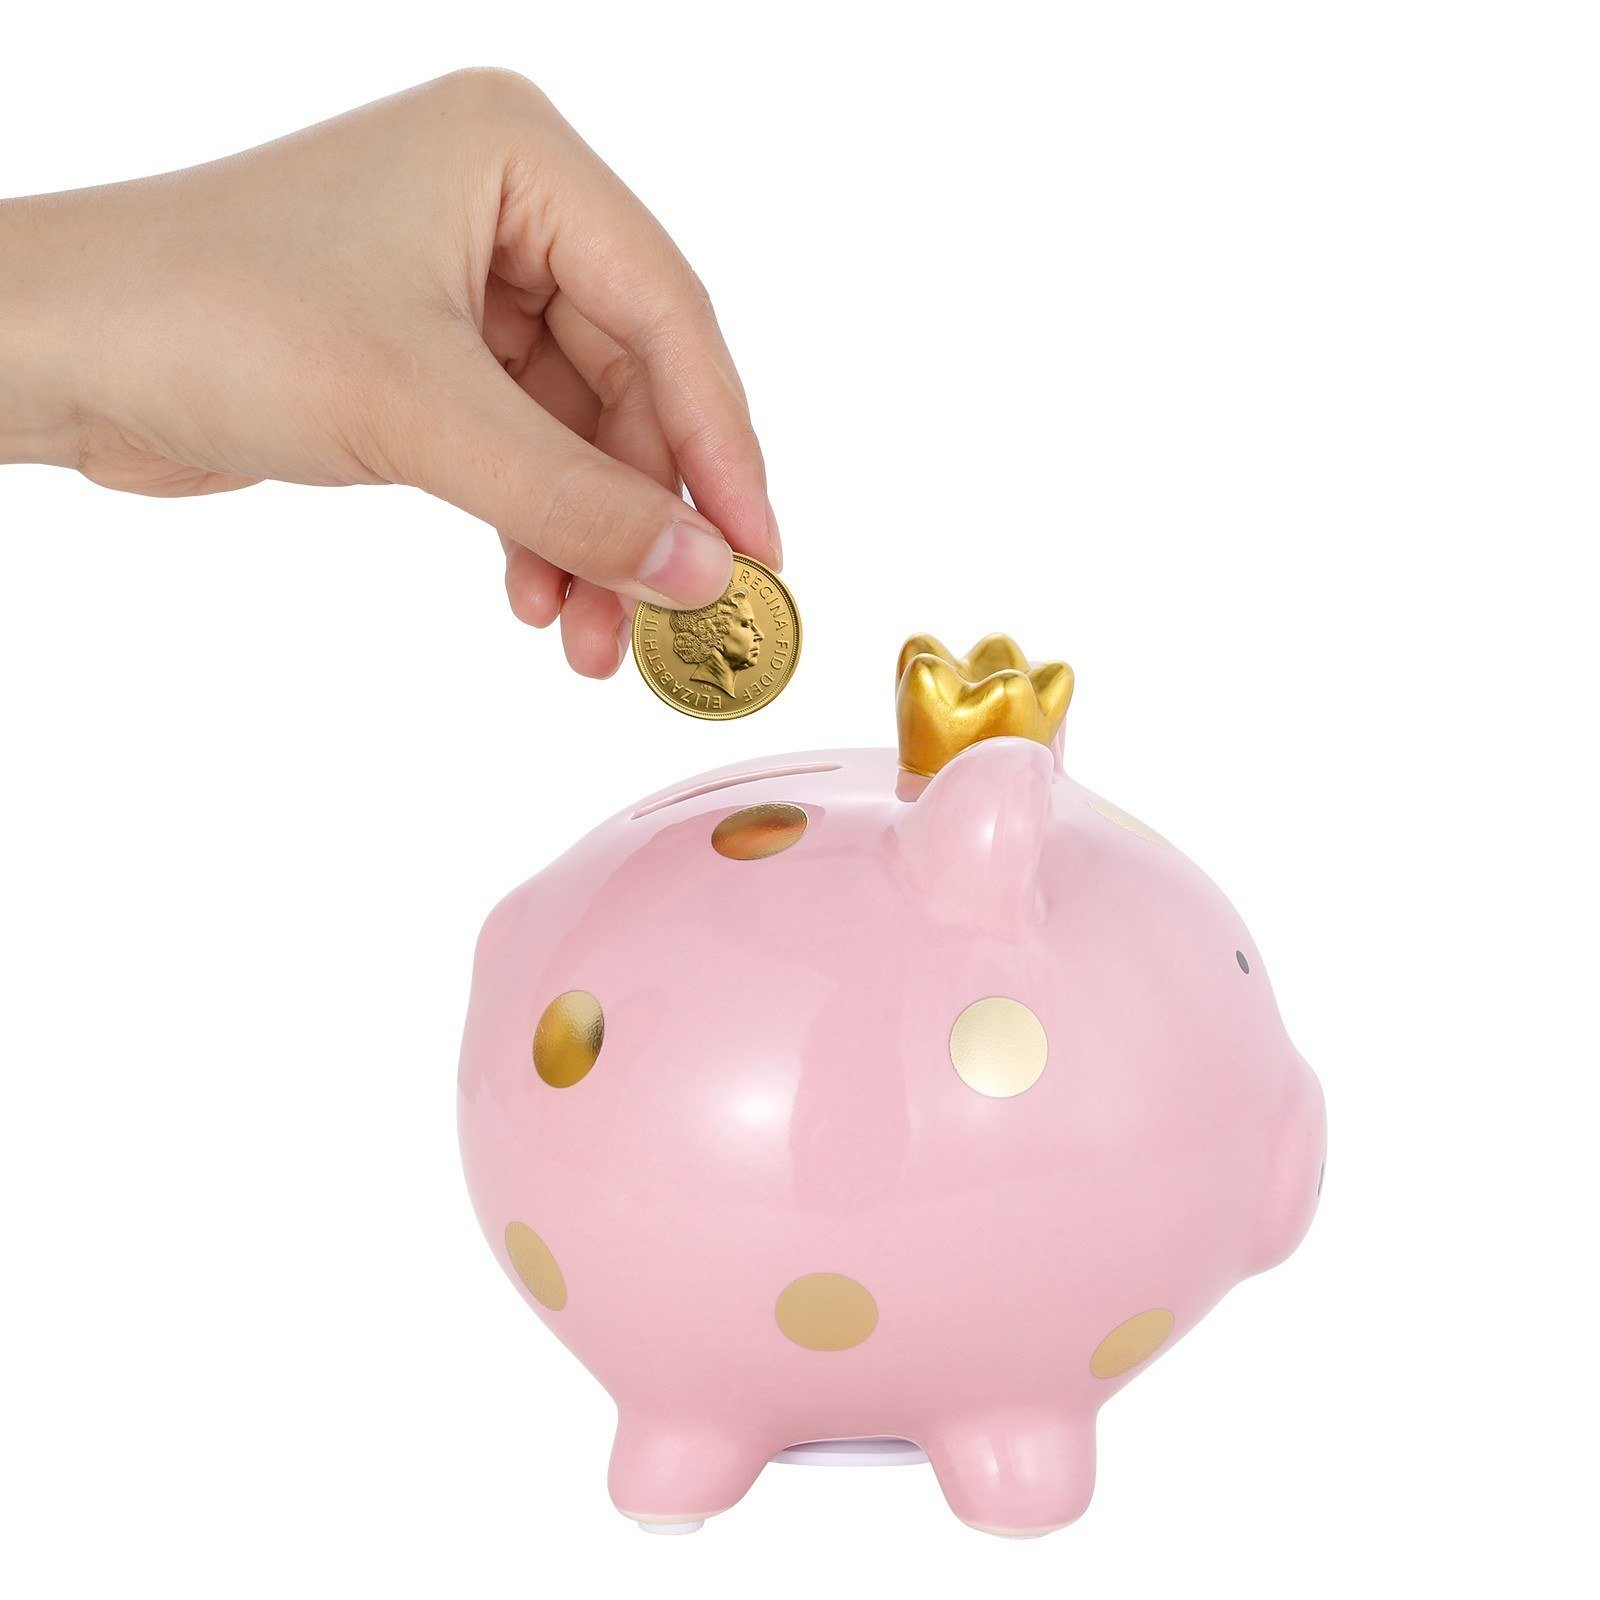 Keraaminen säästöpossu on samalla vaaleanpunainen koriste main variant image